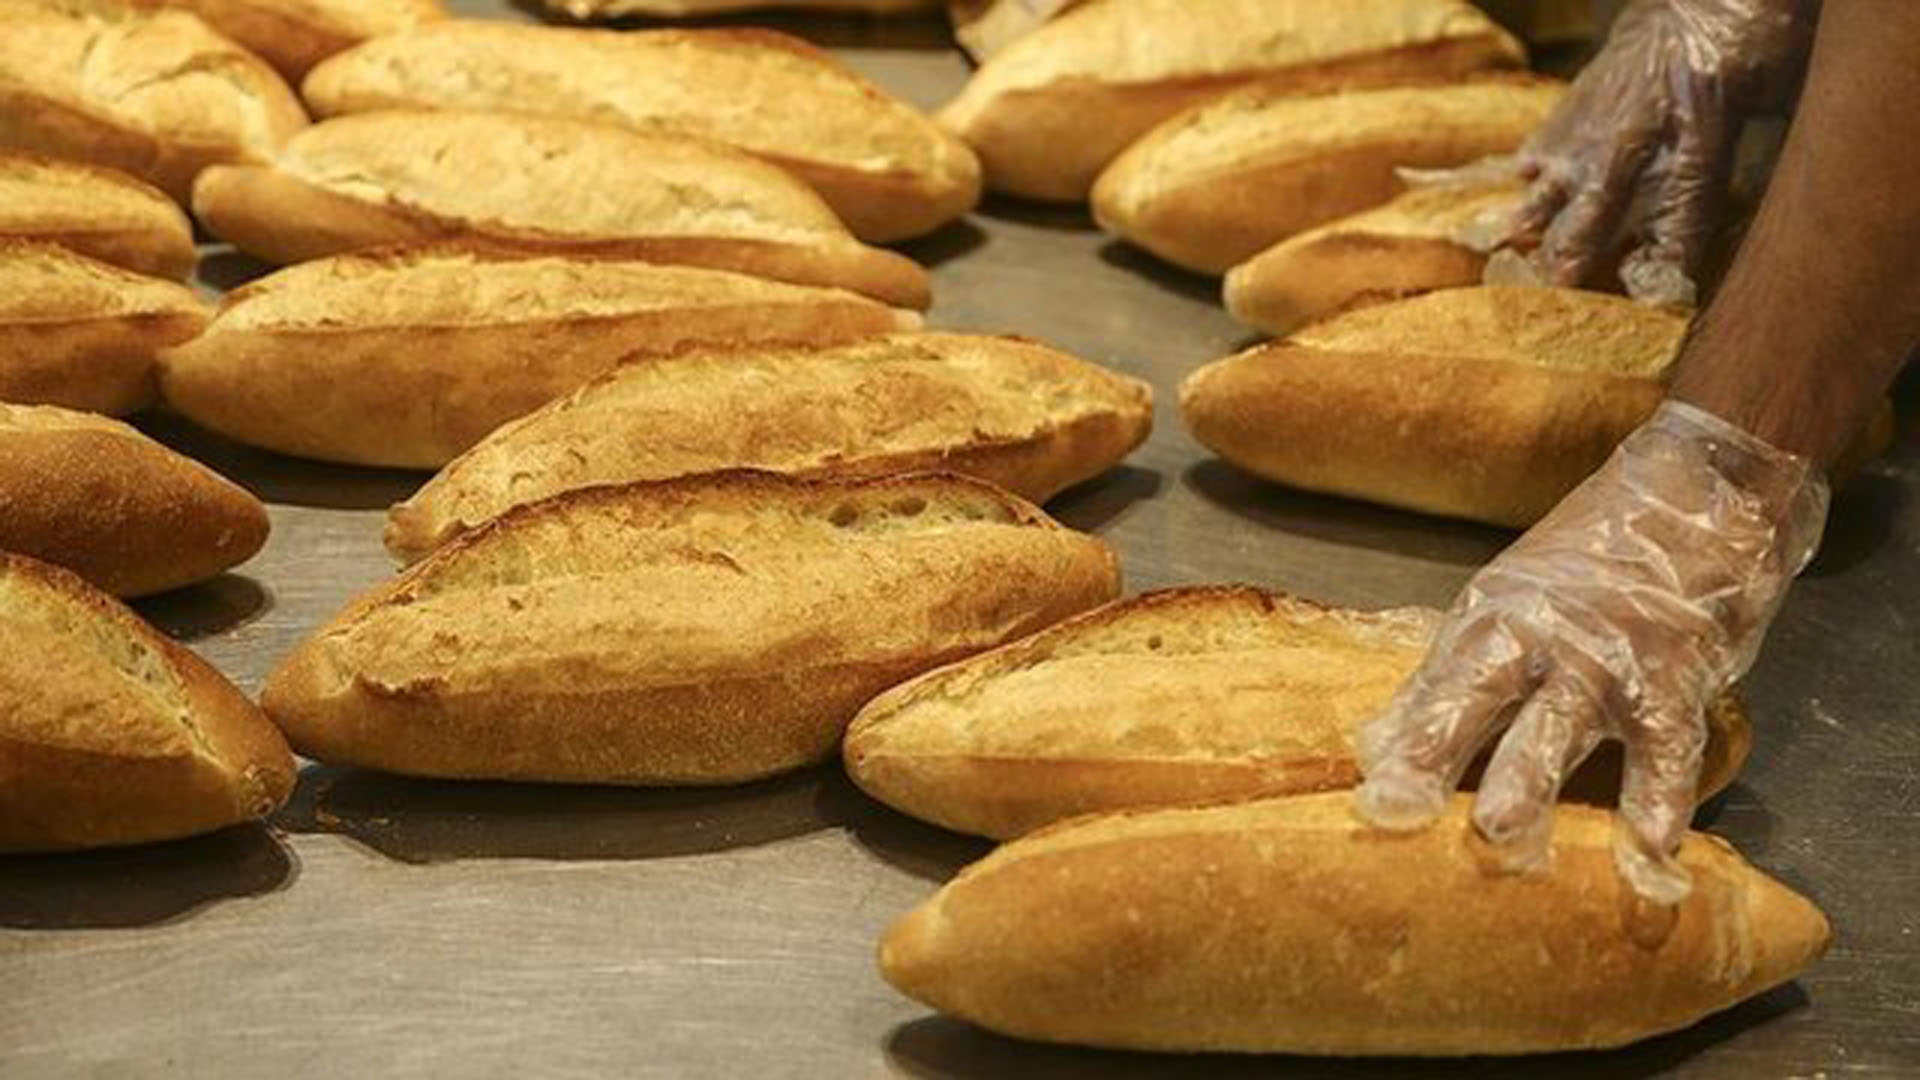 İstanbul'da ekmek 5 lira olacak denilmişti! Ekmeği 3 liradan fazla satan fırıncılara rekor ceza geliyor!